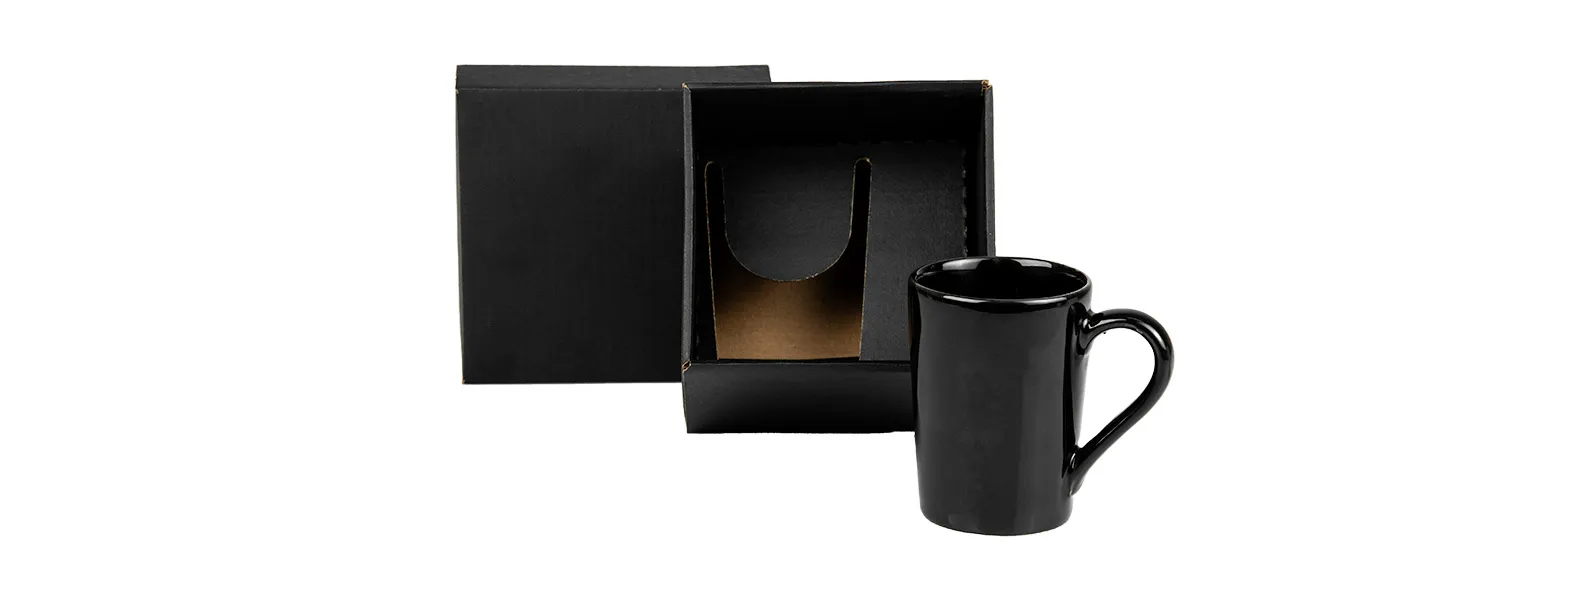 Caneca em cerâmica preta com capacidade para até 230 ml e uma embalagem com elástico para presente.